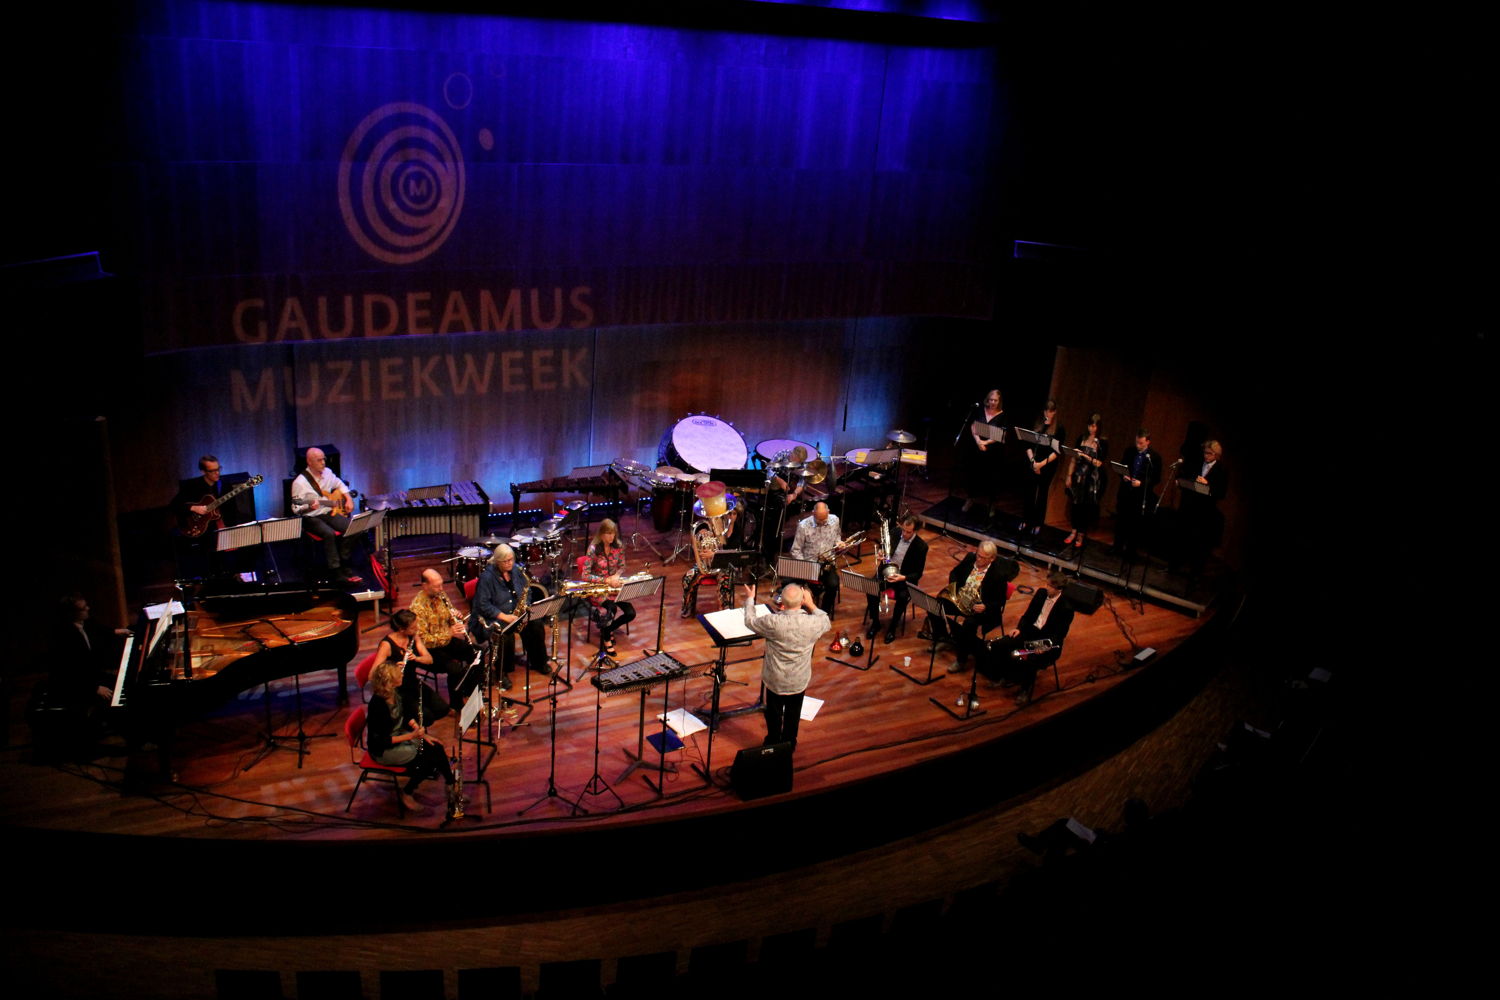 Gaudeamus Muziekweek in TivoliVredenburg Hertz (HQ) - Foto: Co Broerse